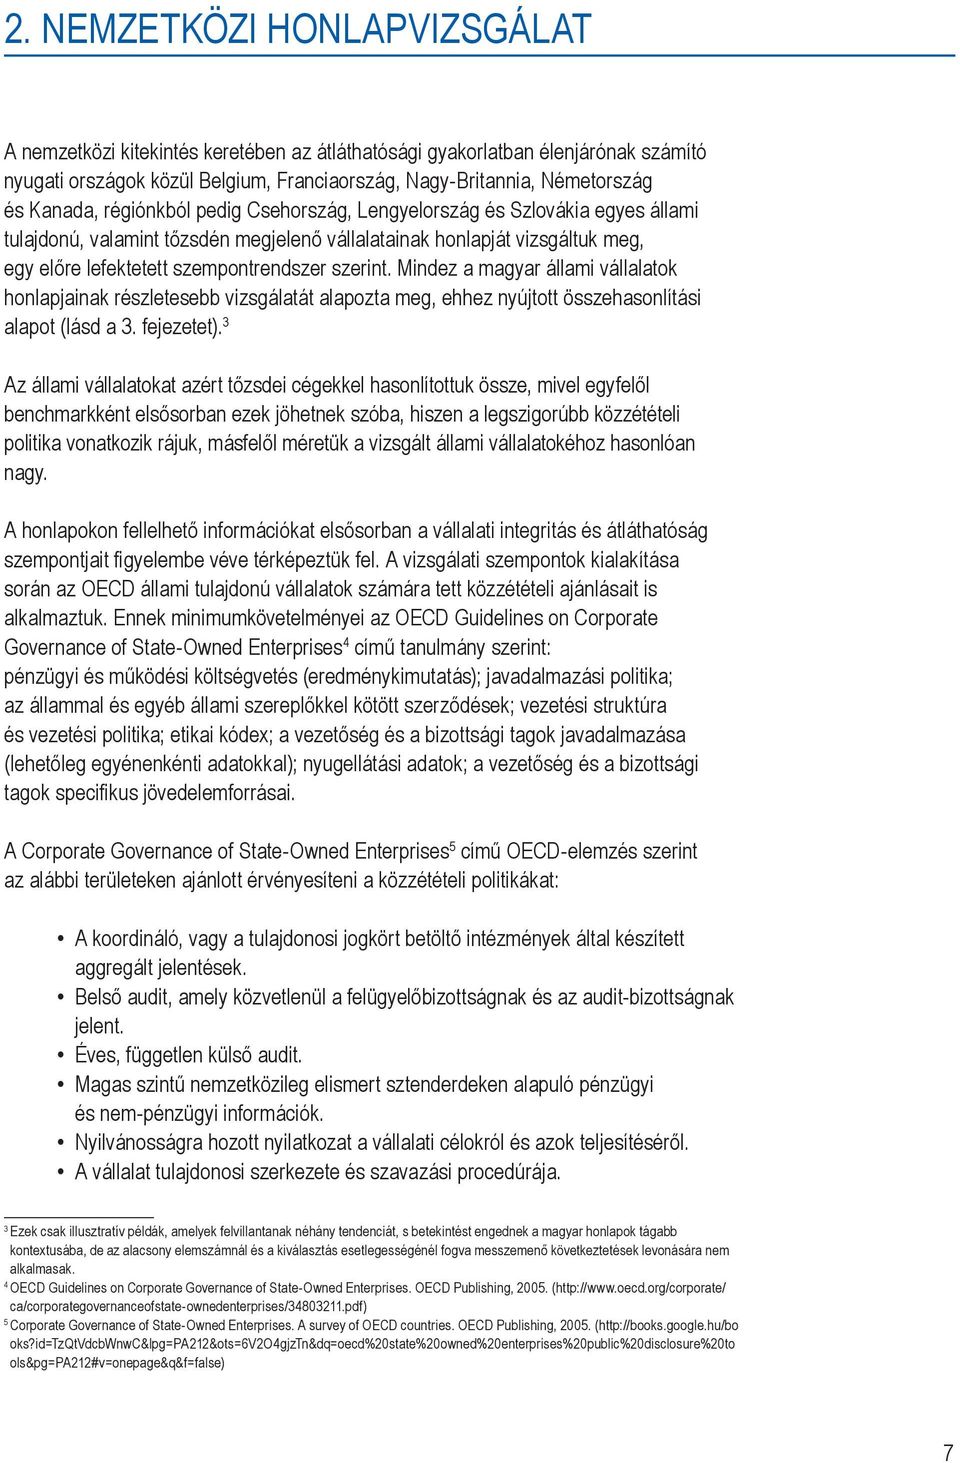 Mindez a magyar állami vállalatok honlapjainak részletesebb vizsgálatát alapozta meg, ehhez nyújtott összehasonlítási alapot (lásd a 3. fejezetet).